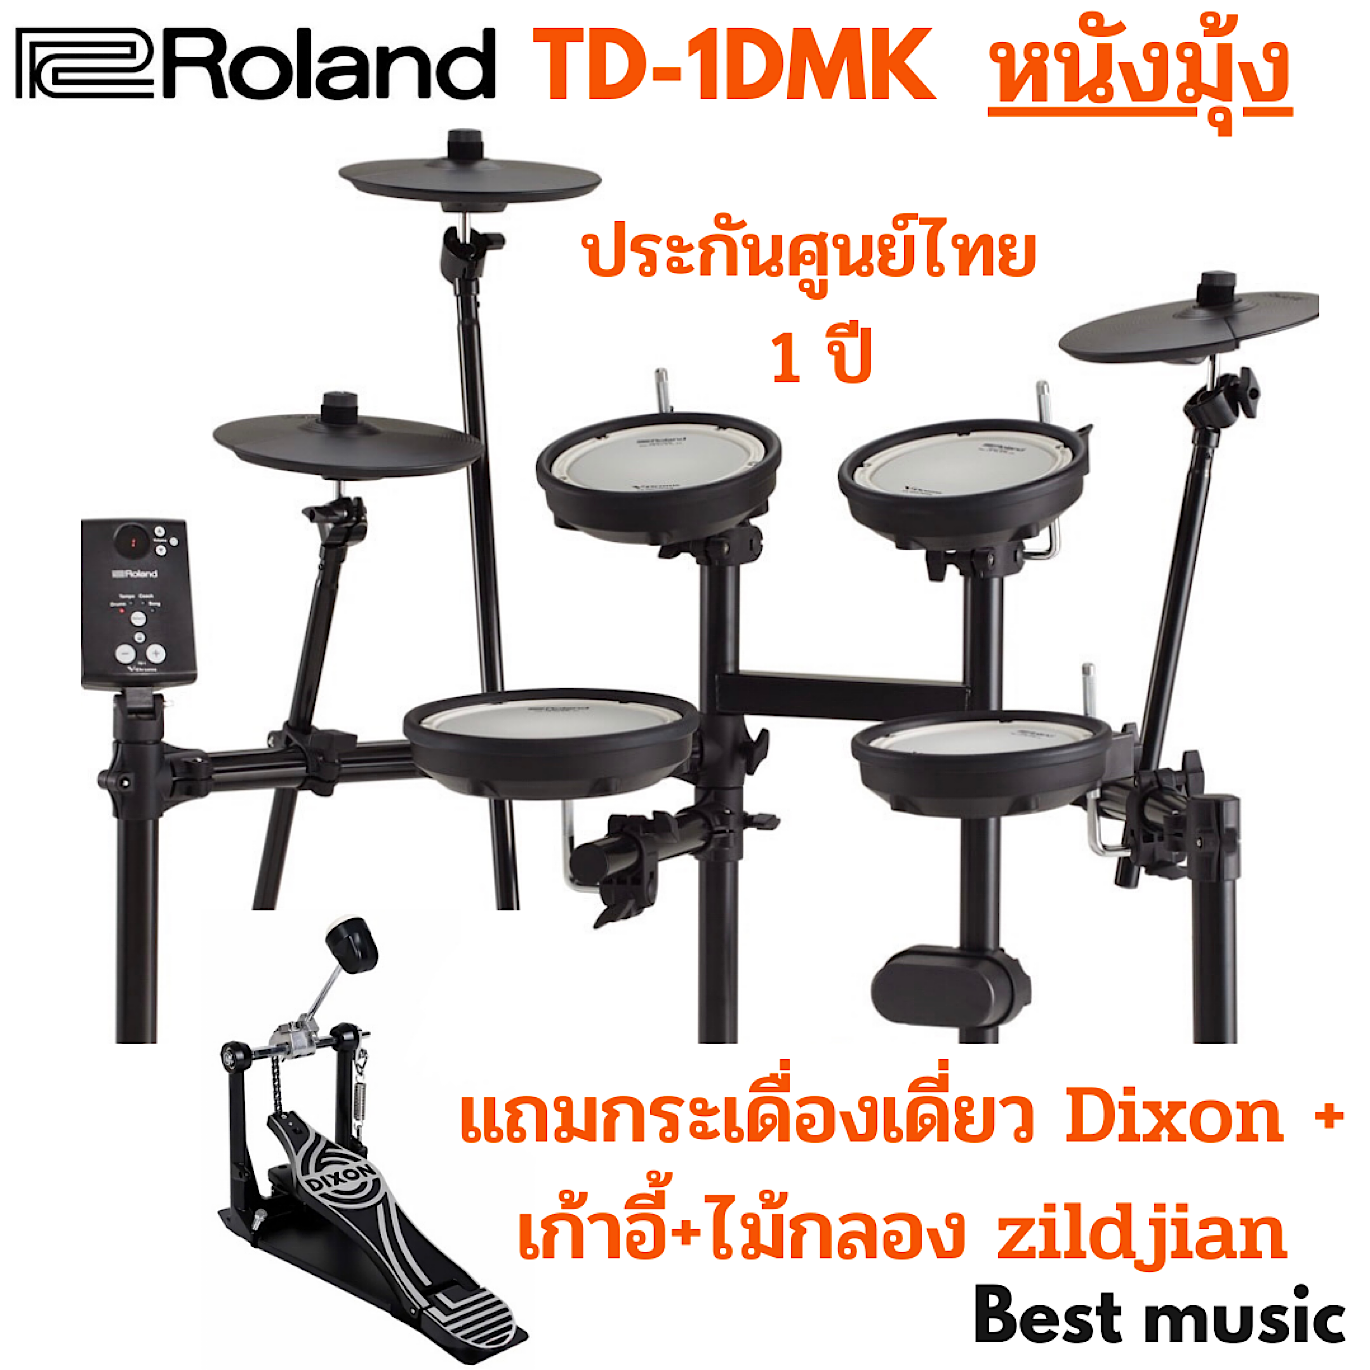 กลองไฟฟ้า Roland TD-1DMK ( หนังมุ้ง )